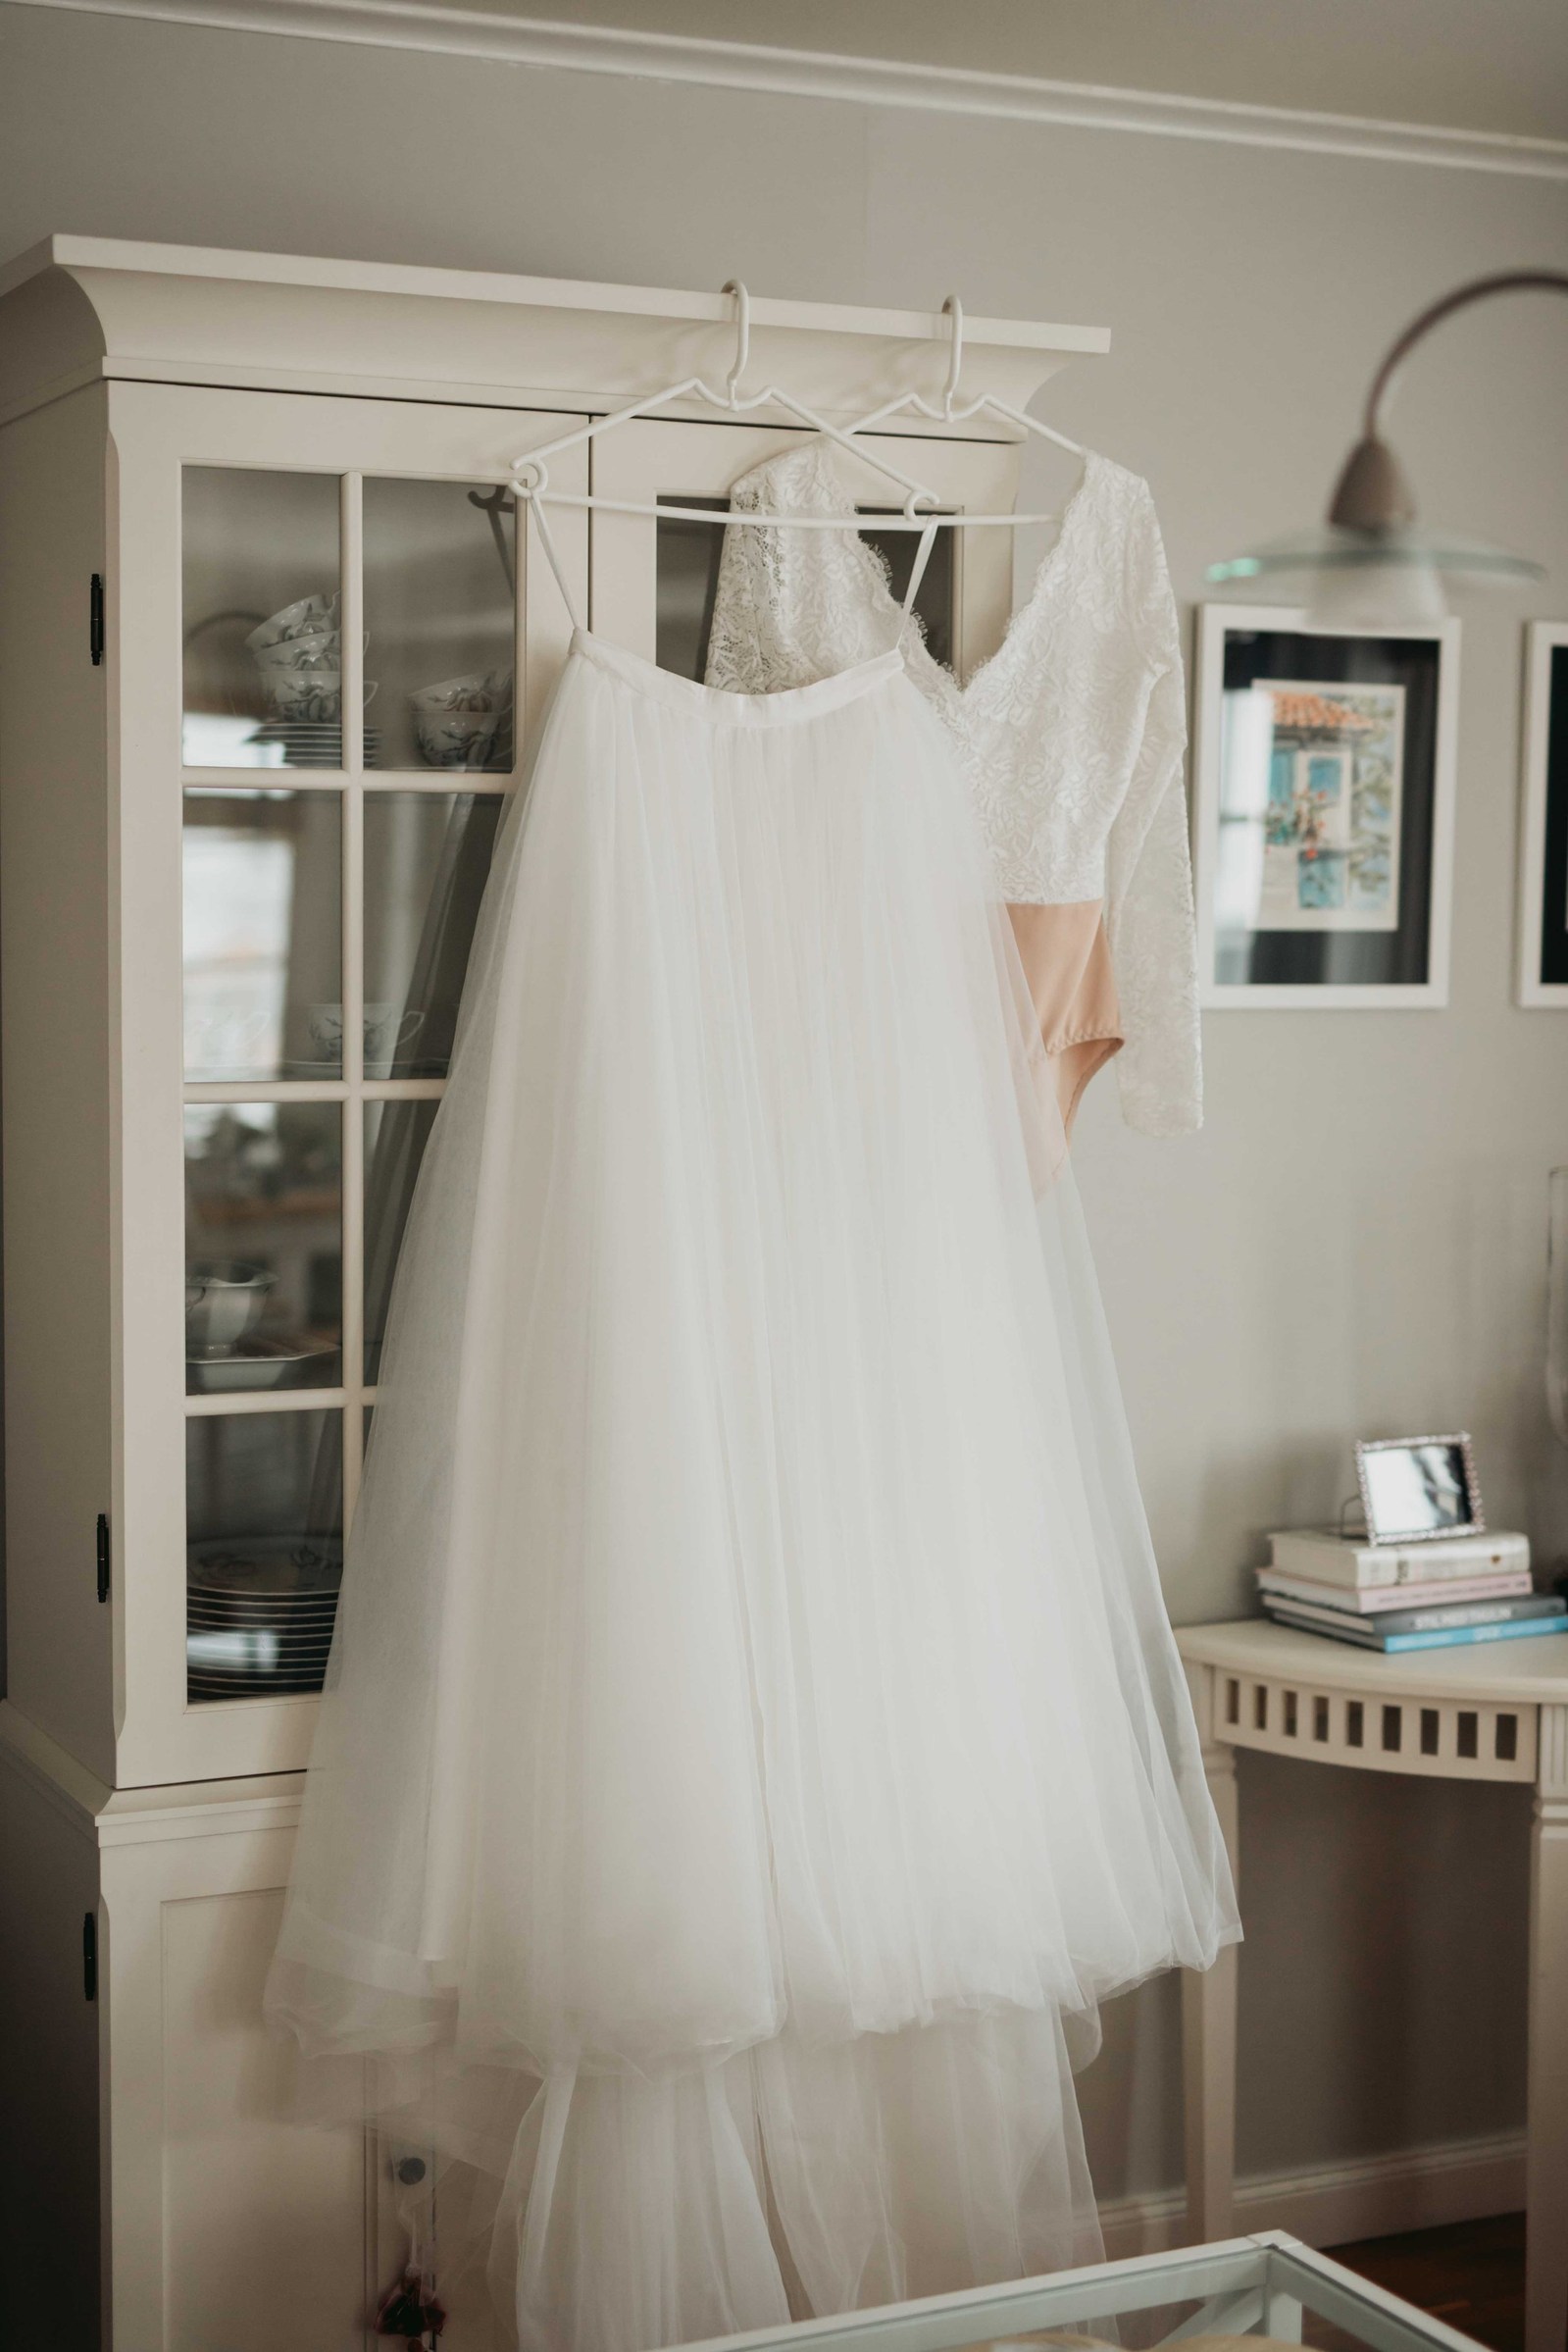 Brudens vita tyllkjol hänger på vit galge tillsammans med den vita spetstoppen i vitrinskåpets framsida av glasparti - i ett vardagsrum med böcker och tavla på väggen.